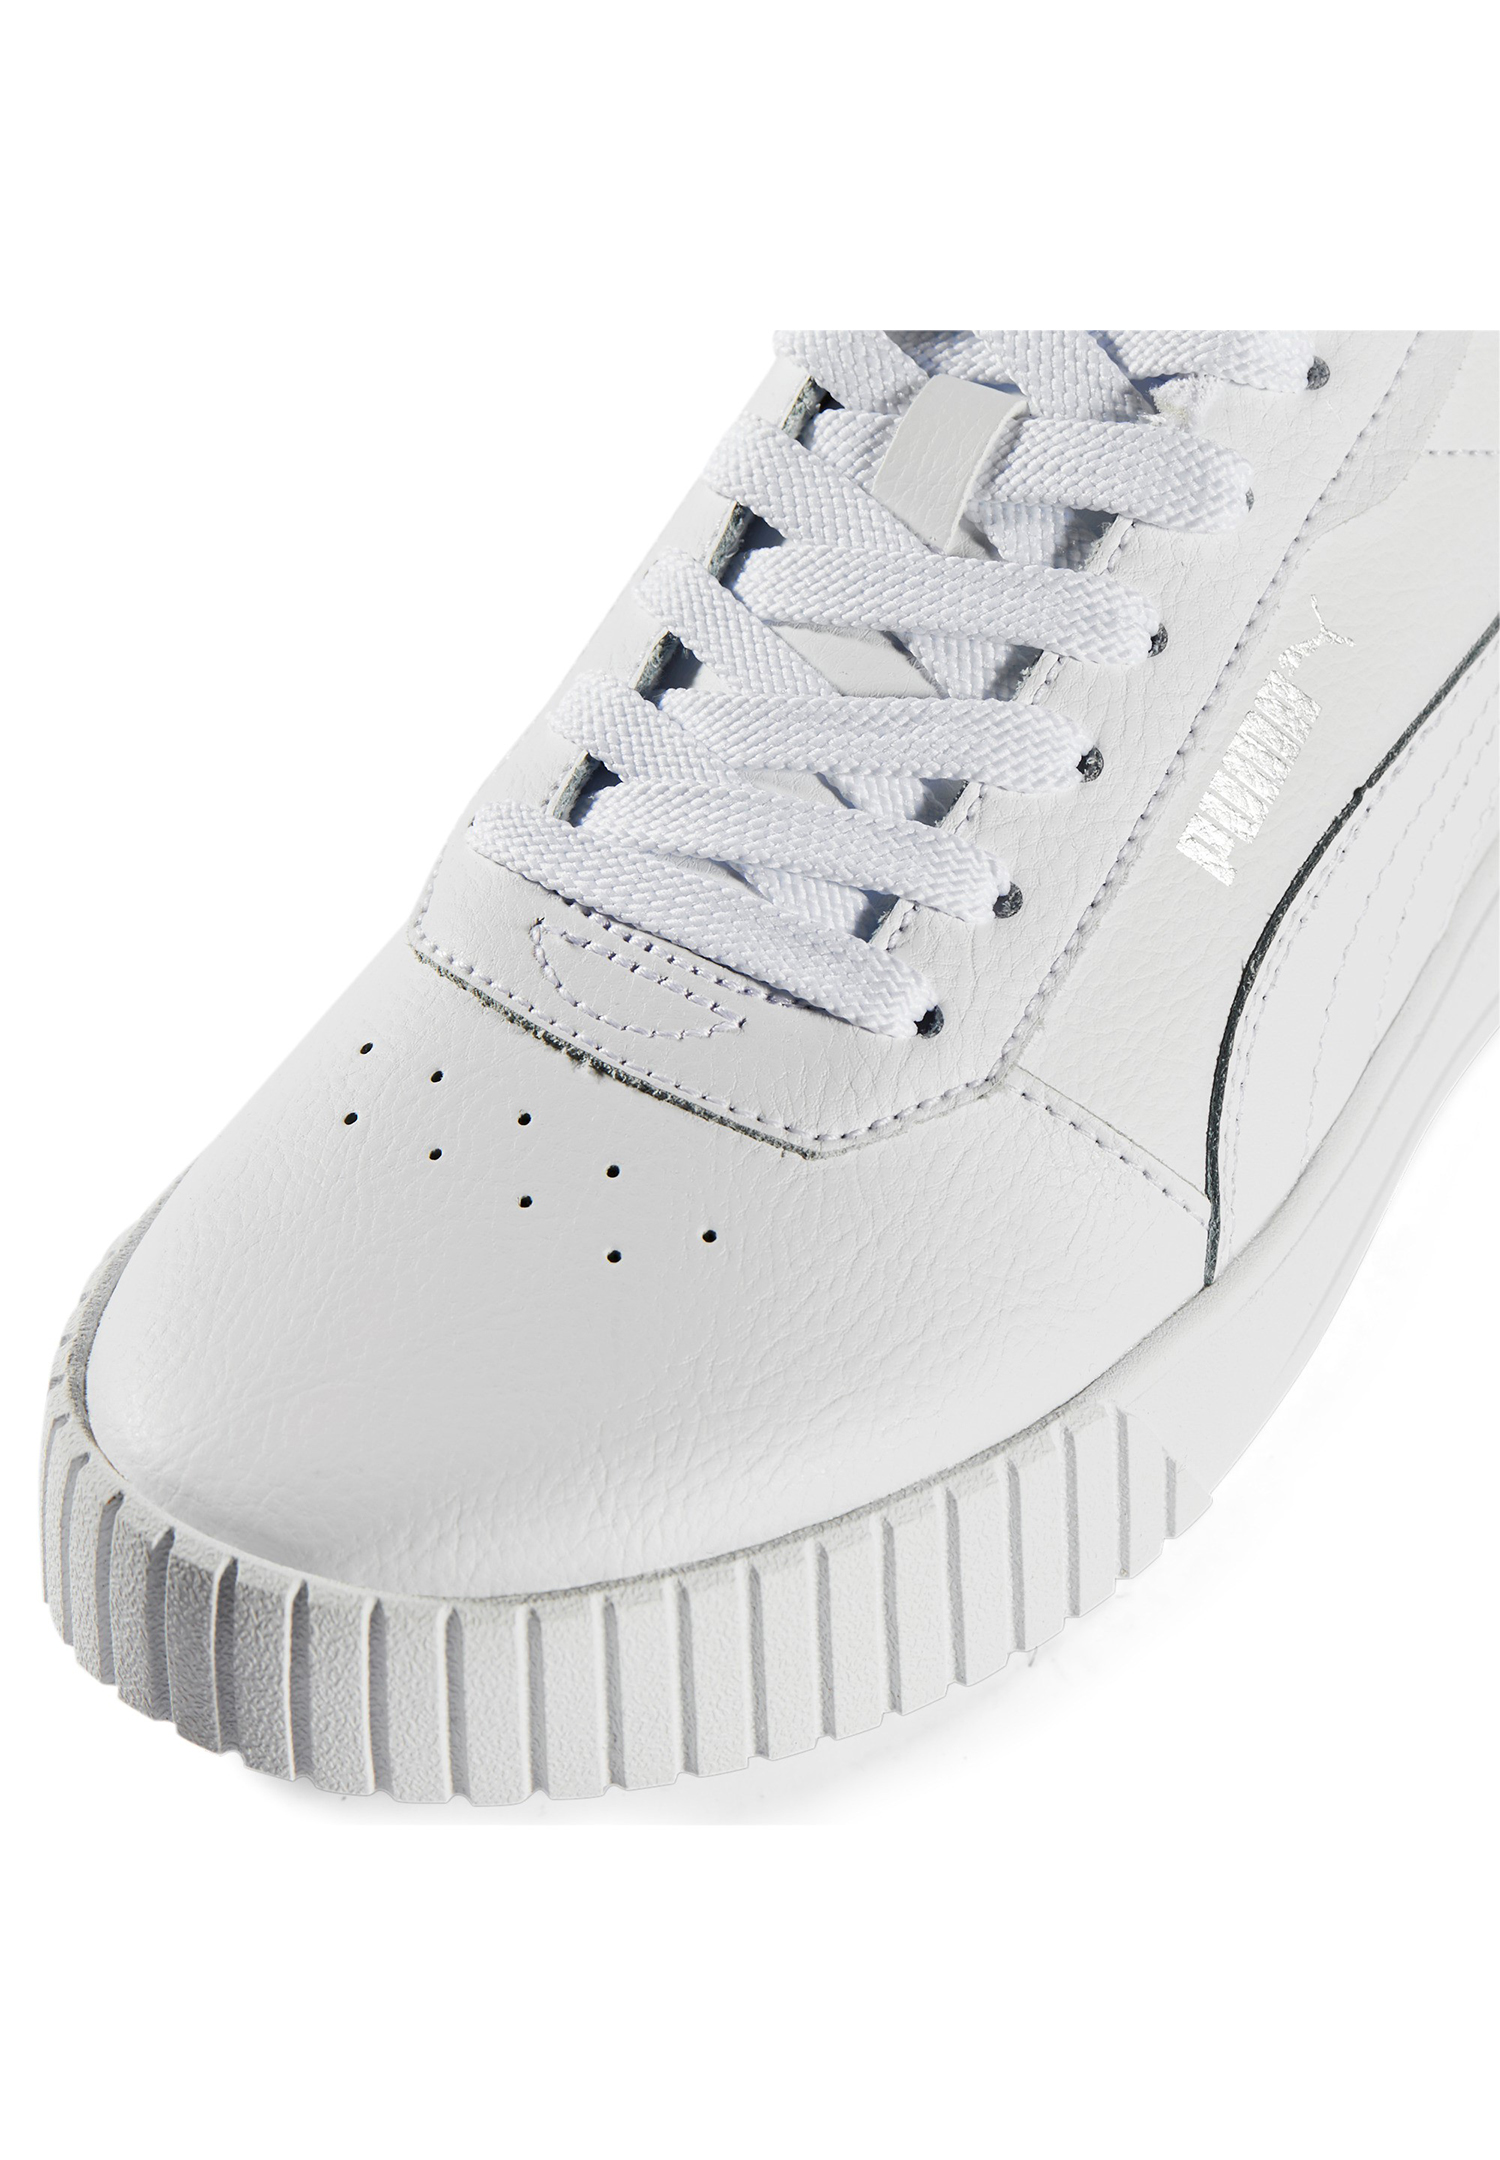 Puma Carina 2.0 Damen Sneaker Leder Schuhe 385849 02 Weiß